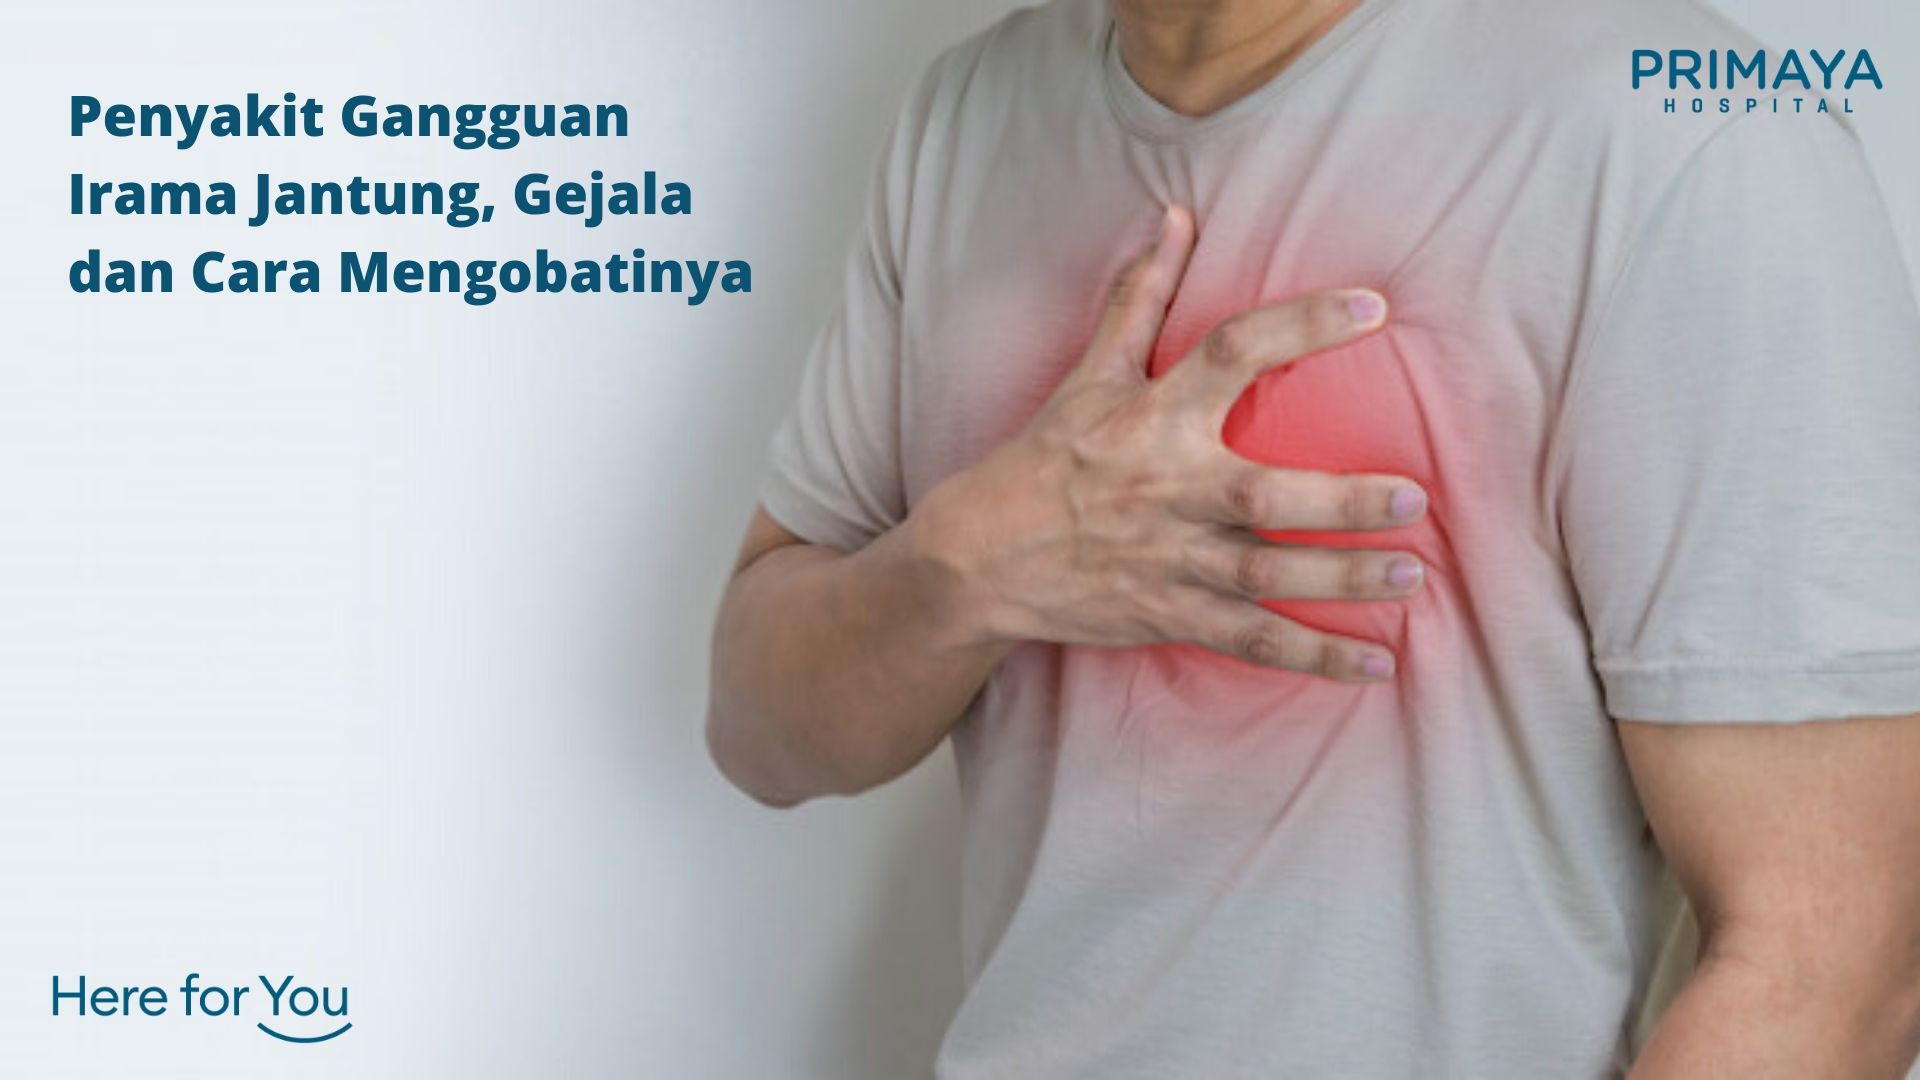 Penyakit Gangguan Irama Jantung, Gejala dan Cara Mengobatinya - Primaya  Hospital